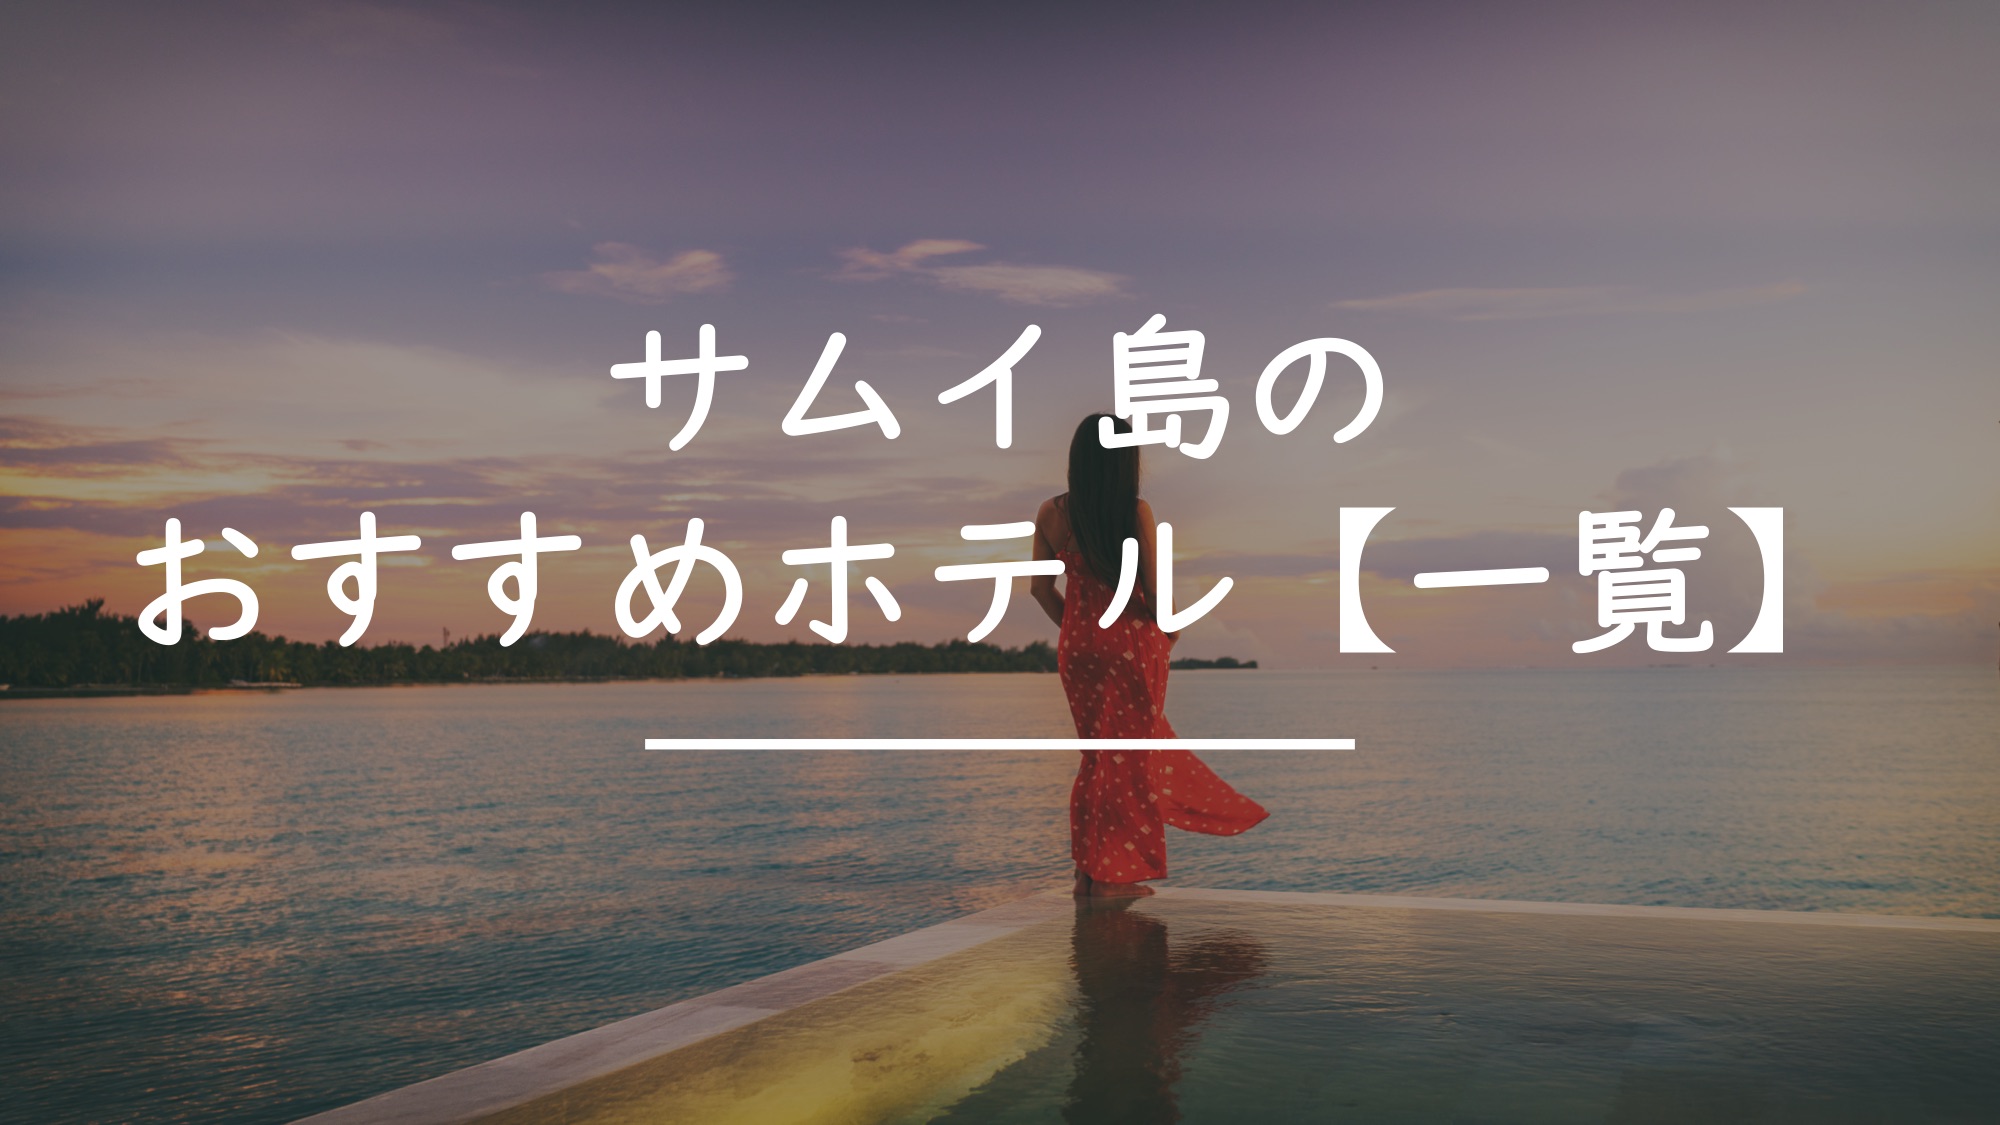 サムイ島のホテル『目的別』におすすめホテルを紹介